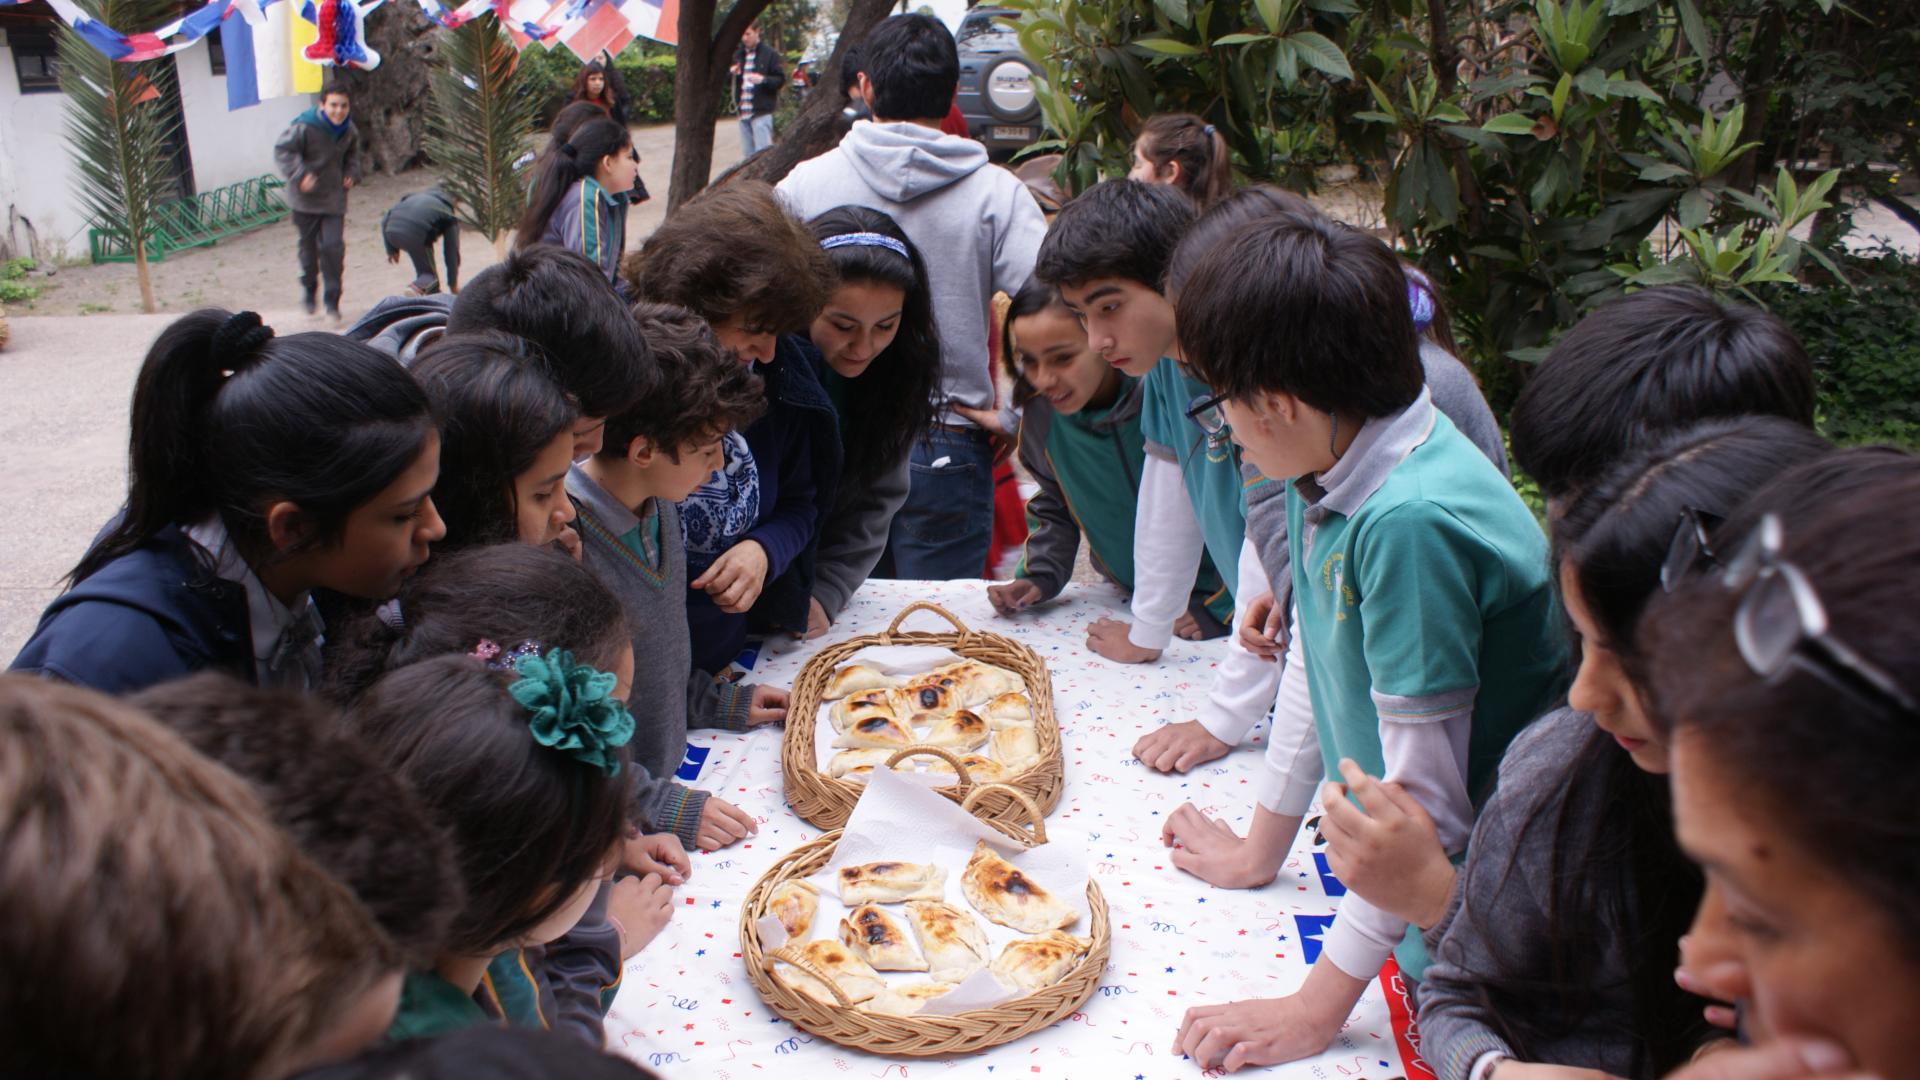 Niños y niñas rodeando una mesa que contiene canastas de empanadas de horno